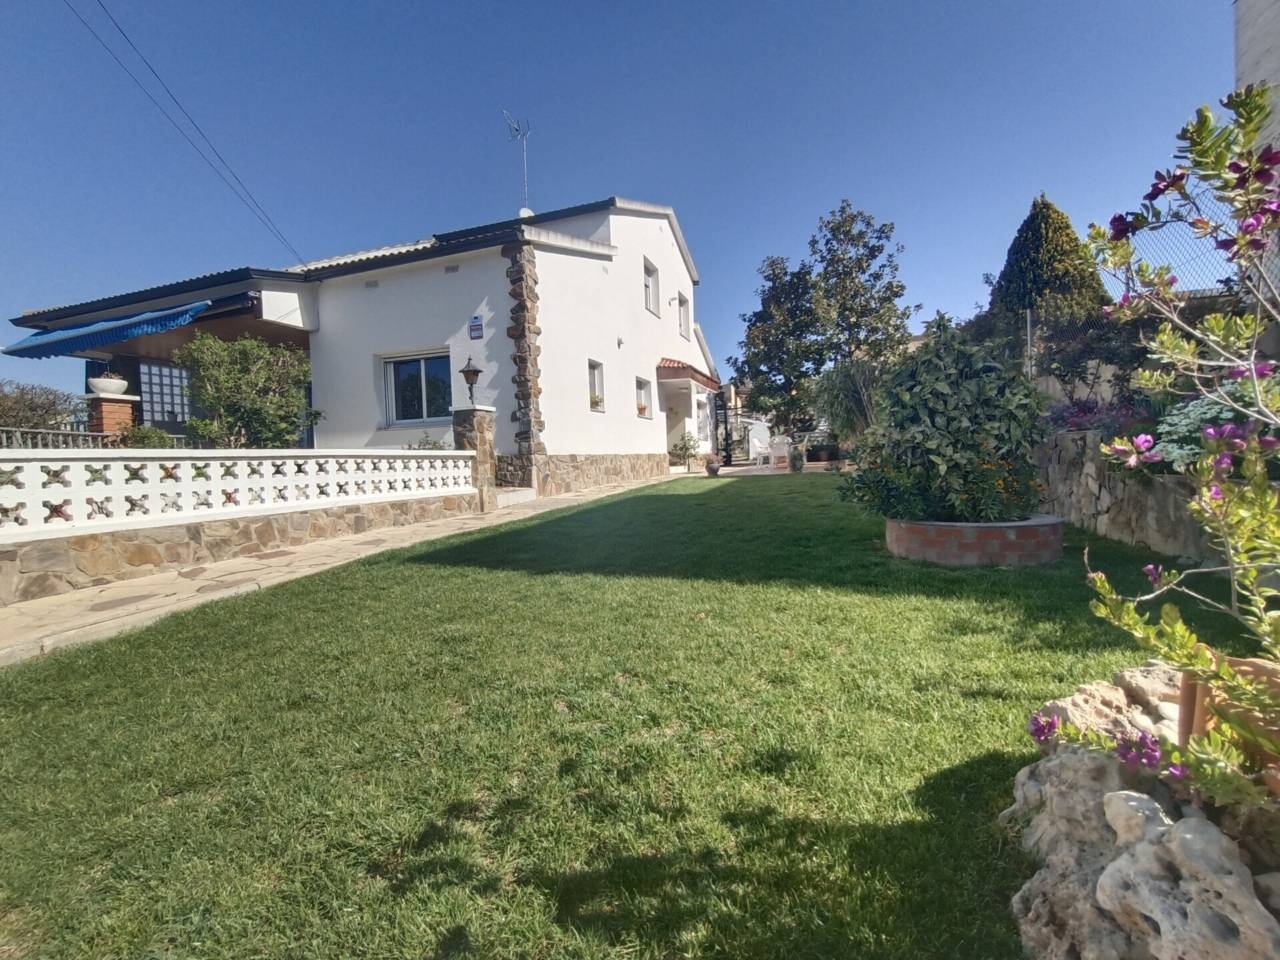 Detached house for sale in Lliçà de Vall